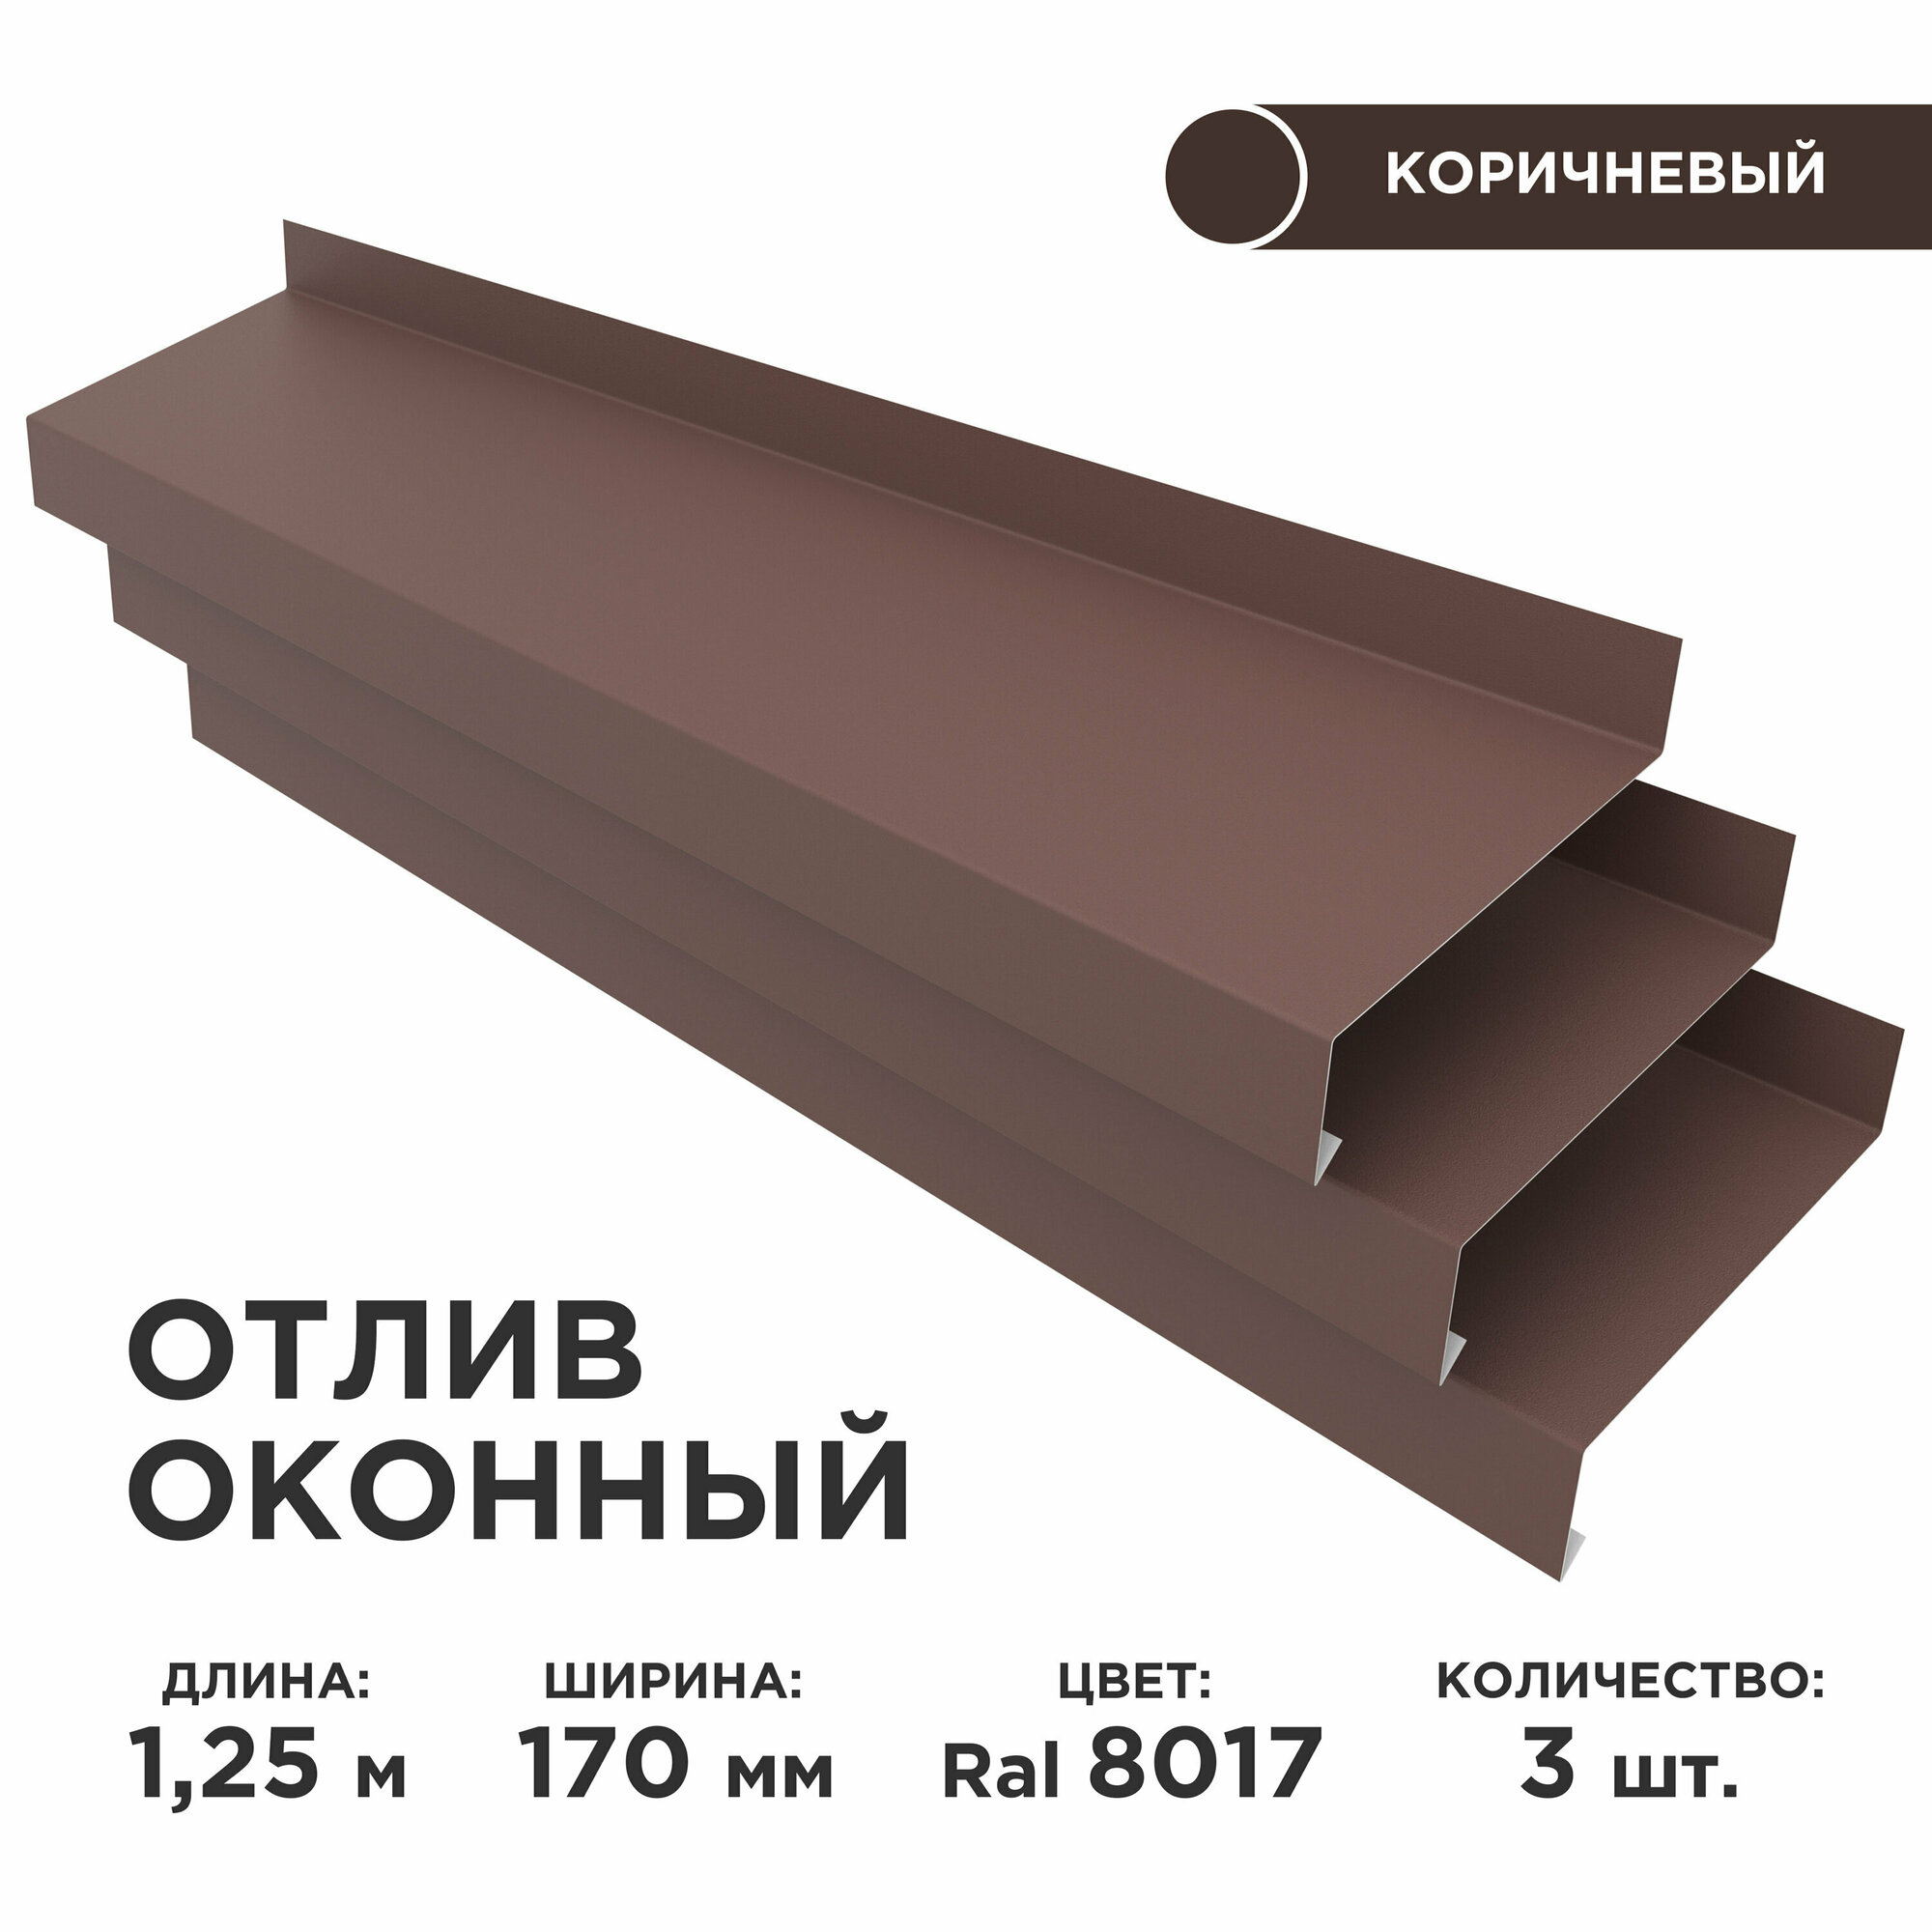 Отлив оконный ширина полки 170мм/ отлив для окна / цвет коричневый(RAL 8017) Длина 125м 3 штуки в комплекте